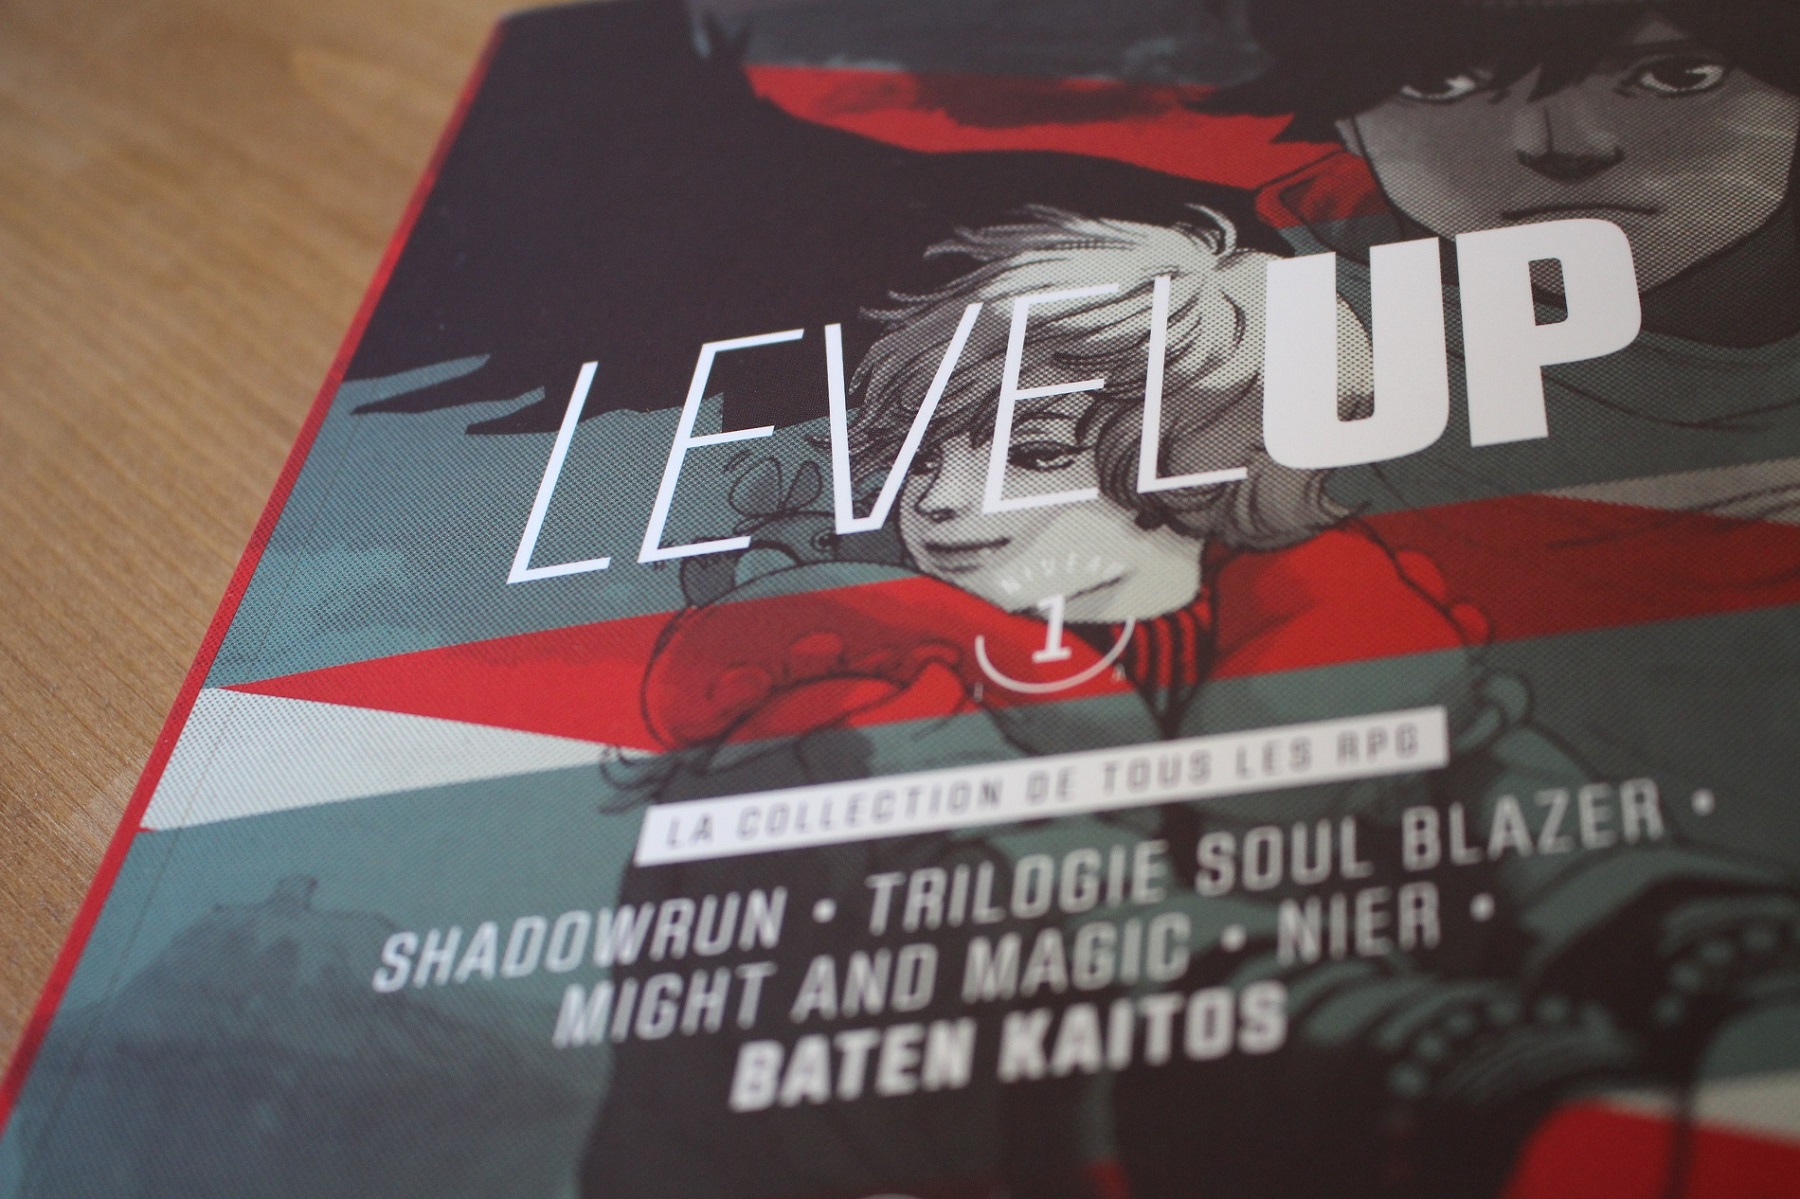 Level up – un élégant mook aux couleurs du RPG